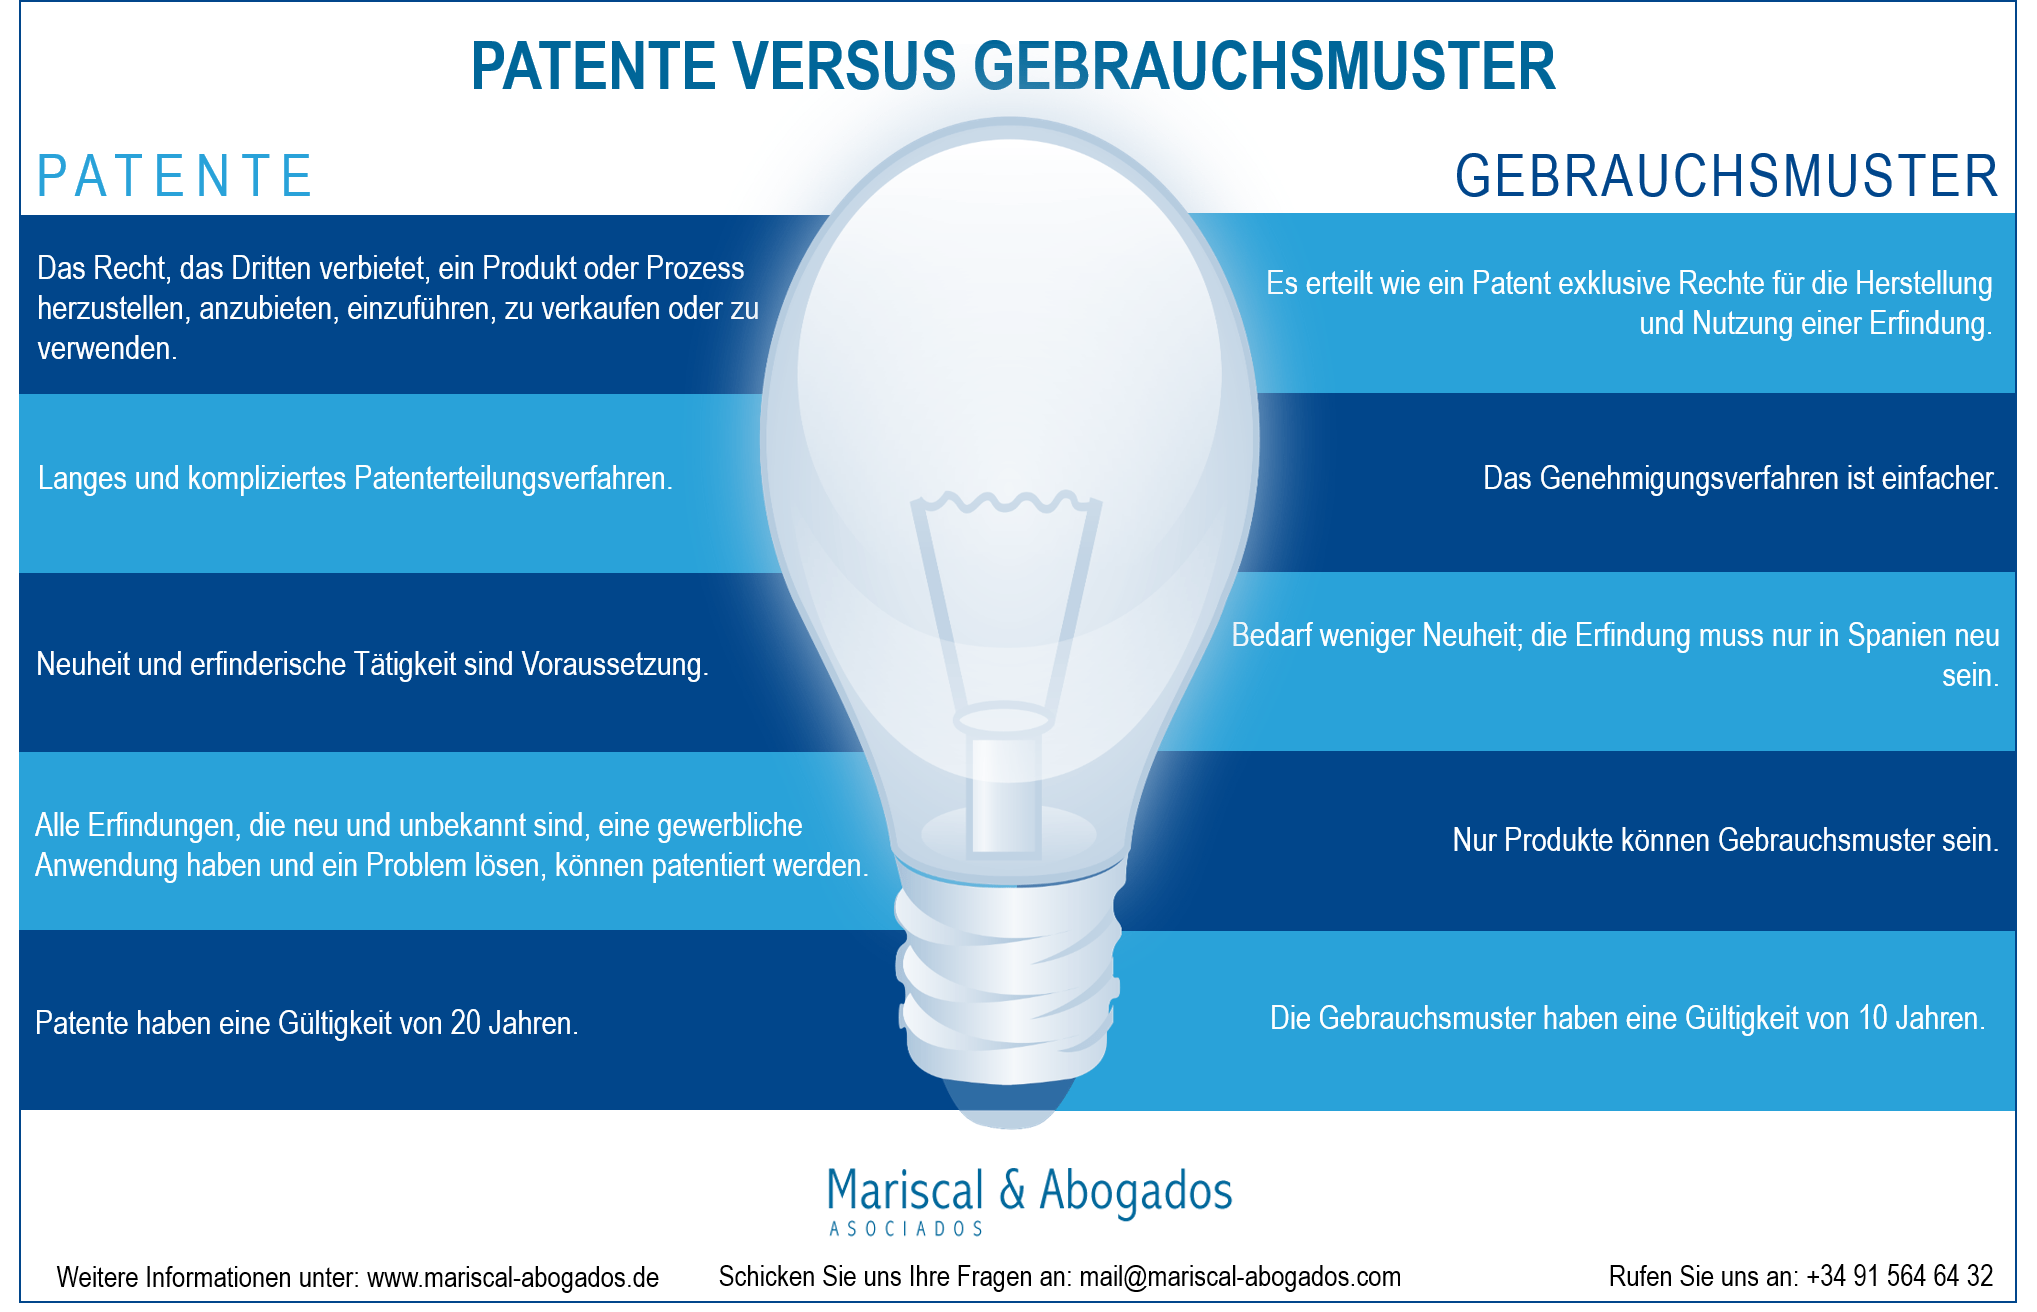 13 2016 Patenterteilung  versus Gebrauchsmuster